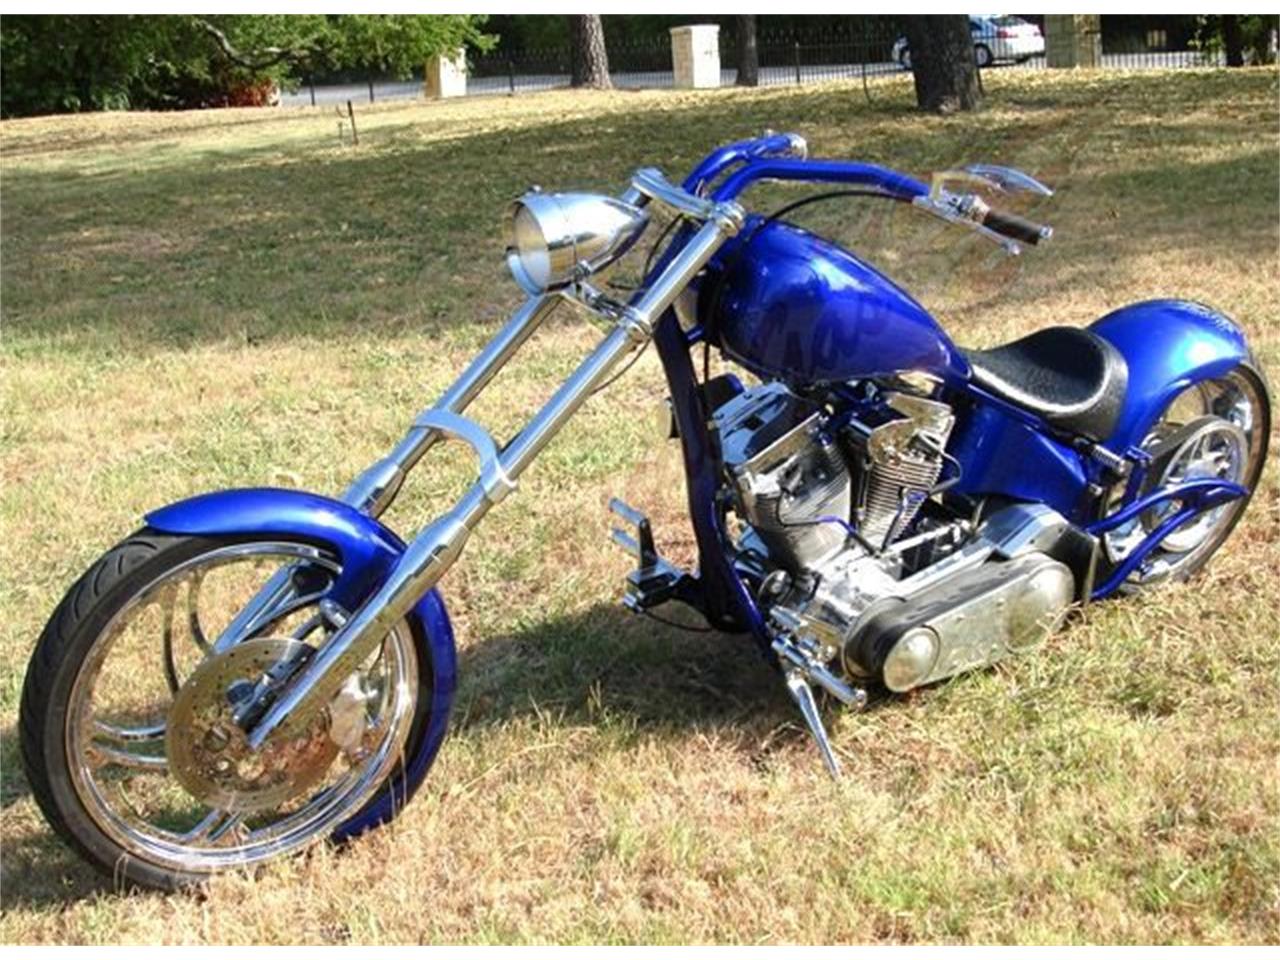 2003 Custom Motorcycle for sale in Arlington, TX